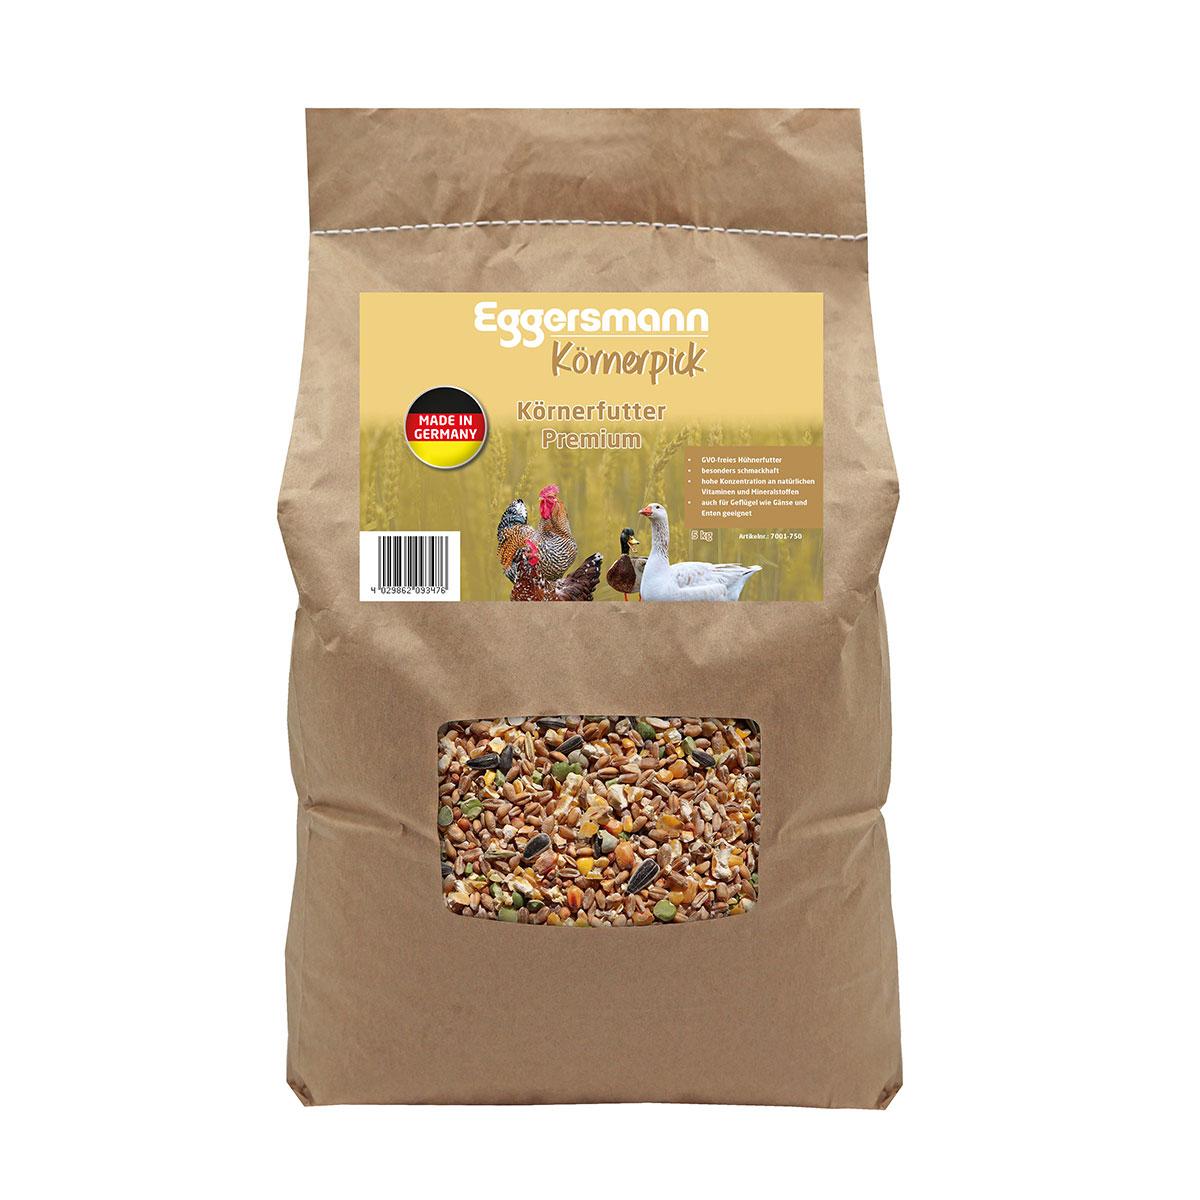 Eggersmann Körnerpick - Körnerfutter Premium 5 kg